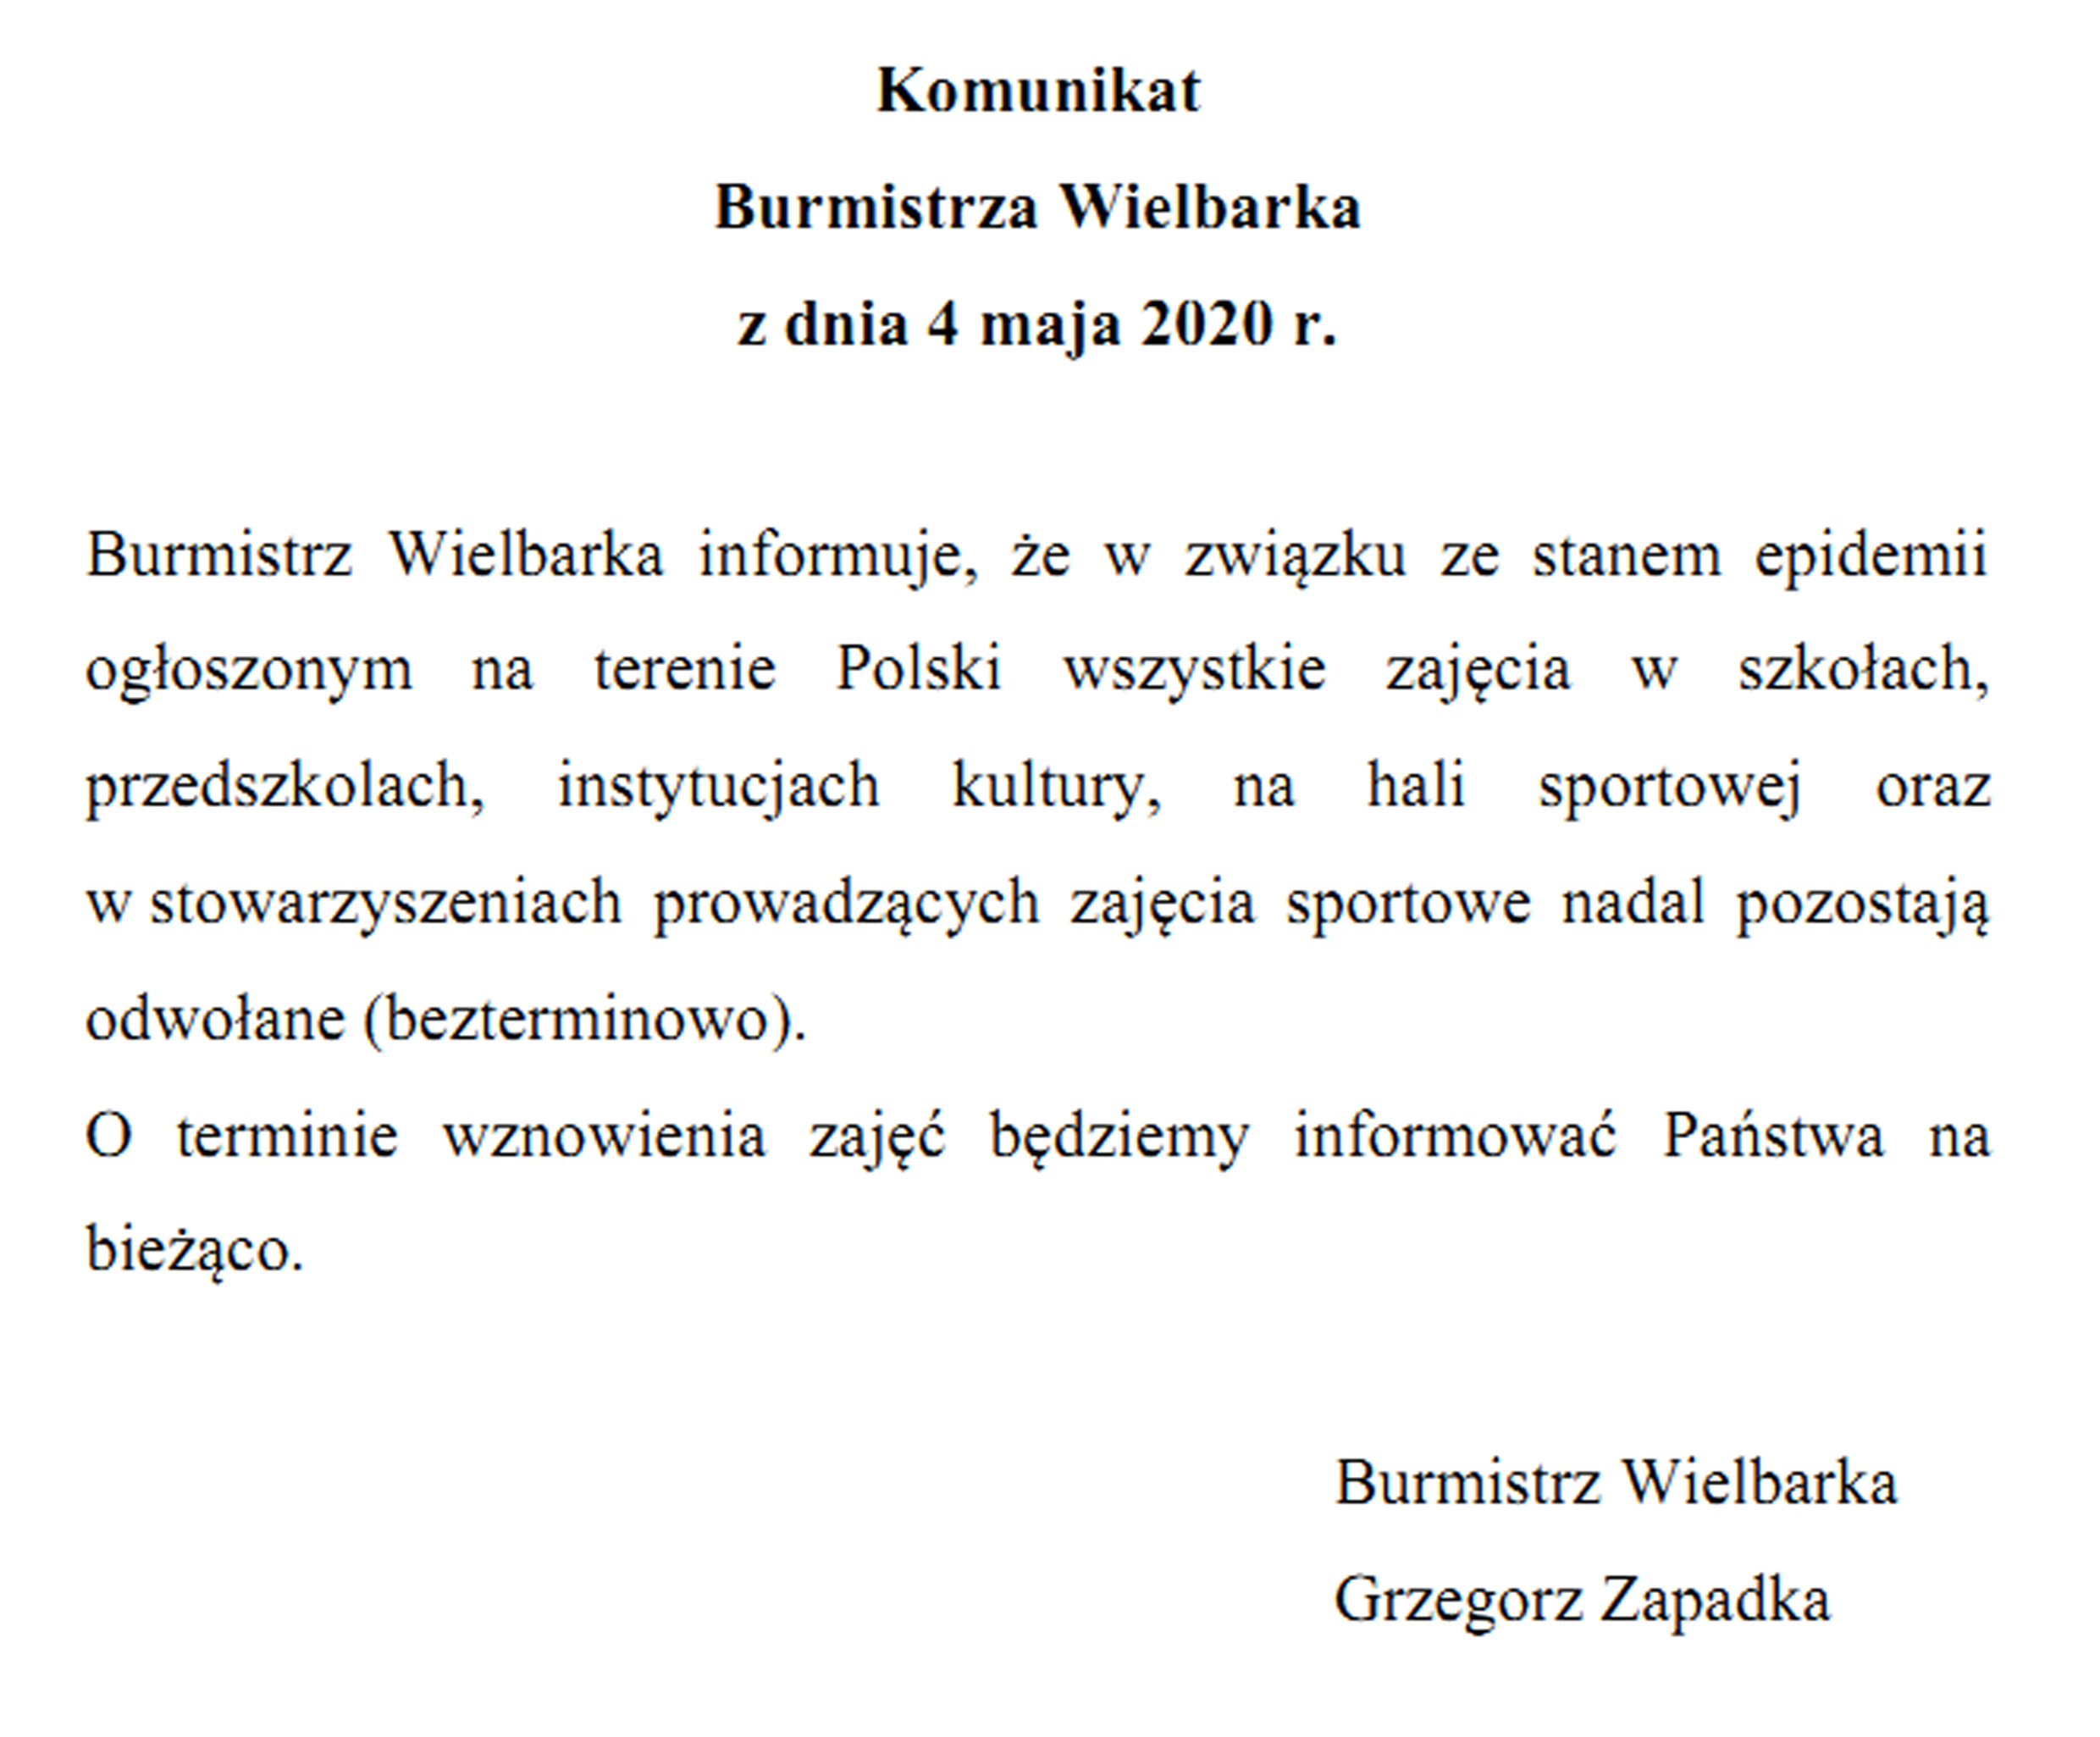 https://m.powiatszczycienski.pl/2020/05/orig/komunikat-burmistrza-wielbarka-z-dnia-04-05-2020-30746.jpg